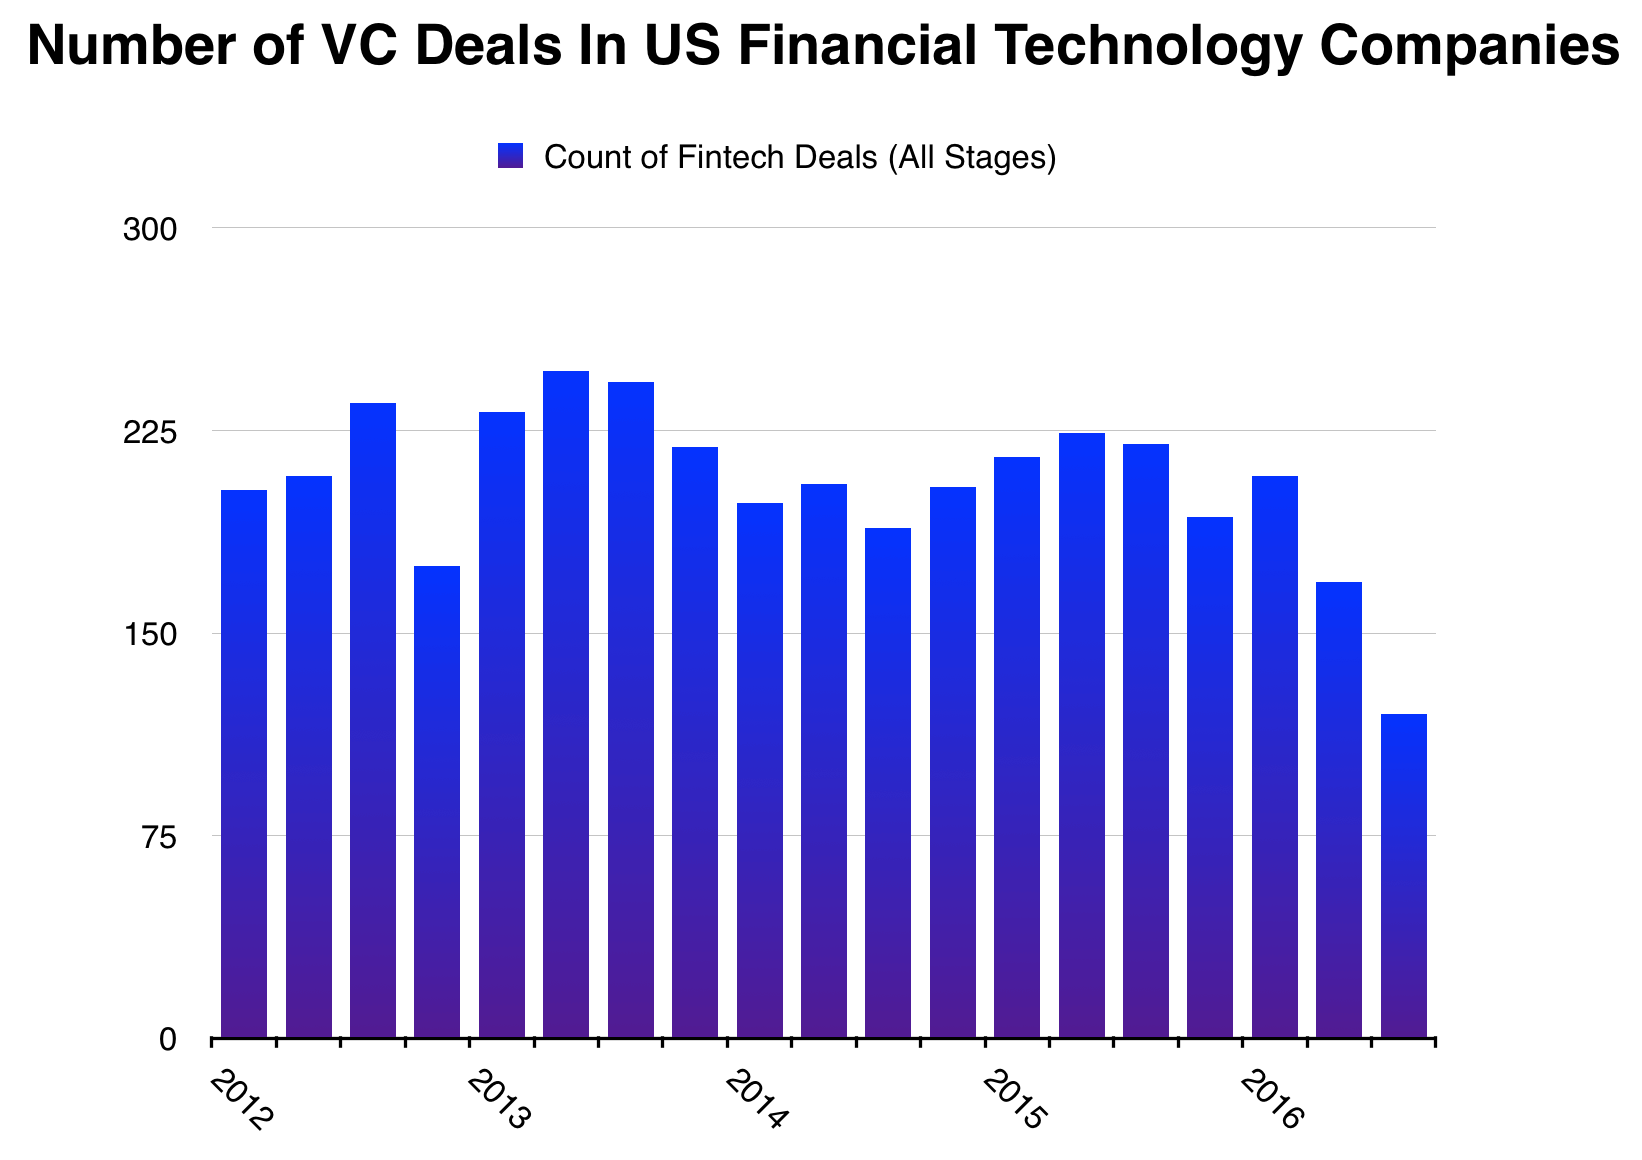 Fintech VC Counts